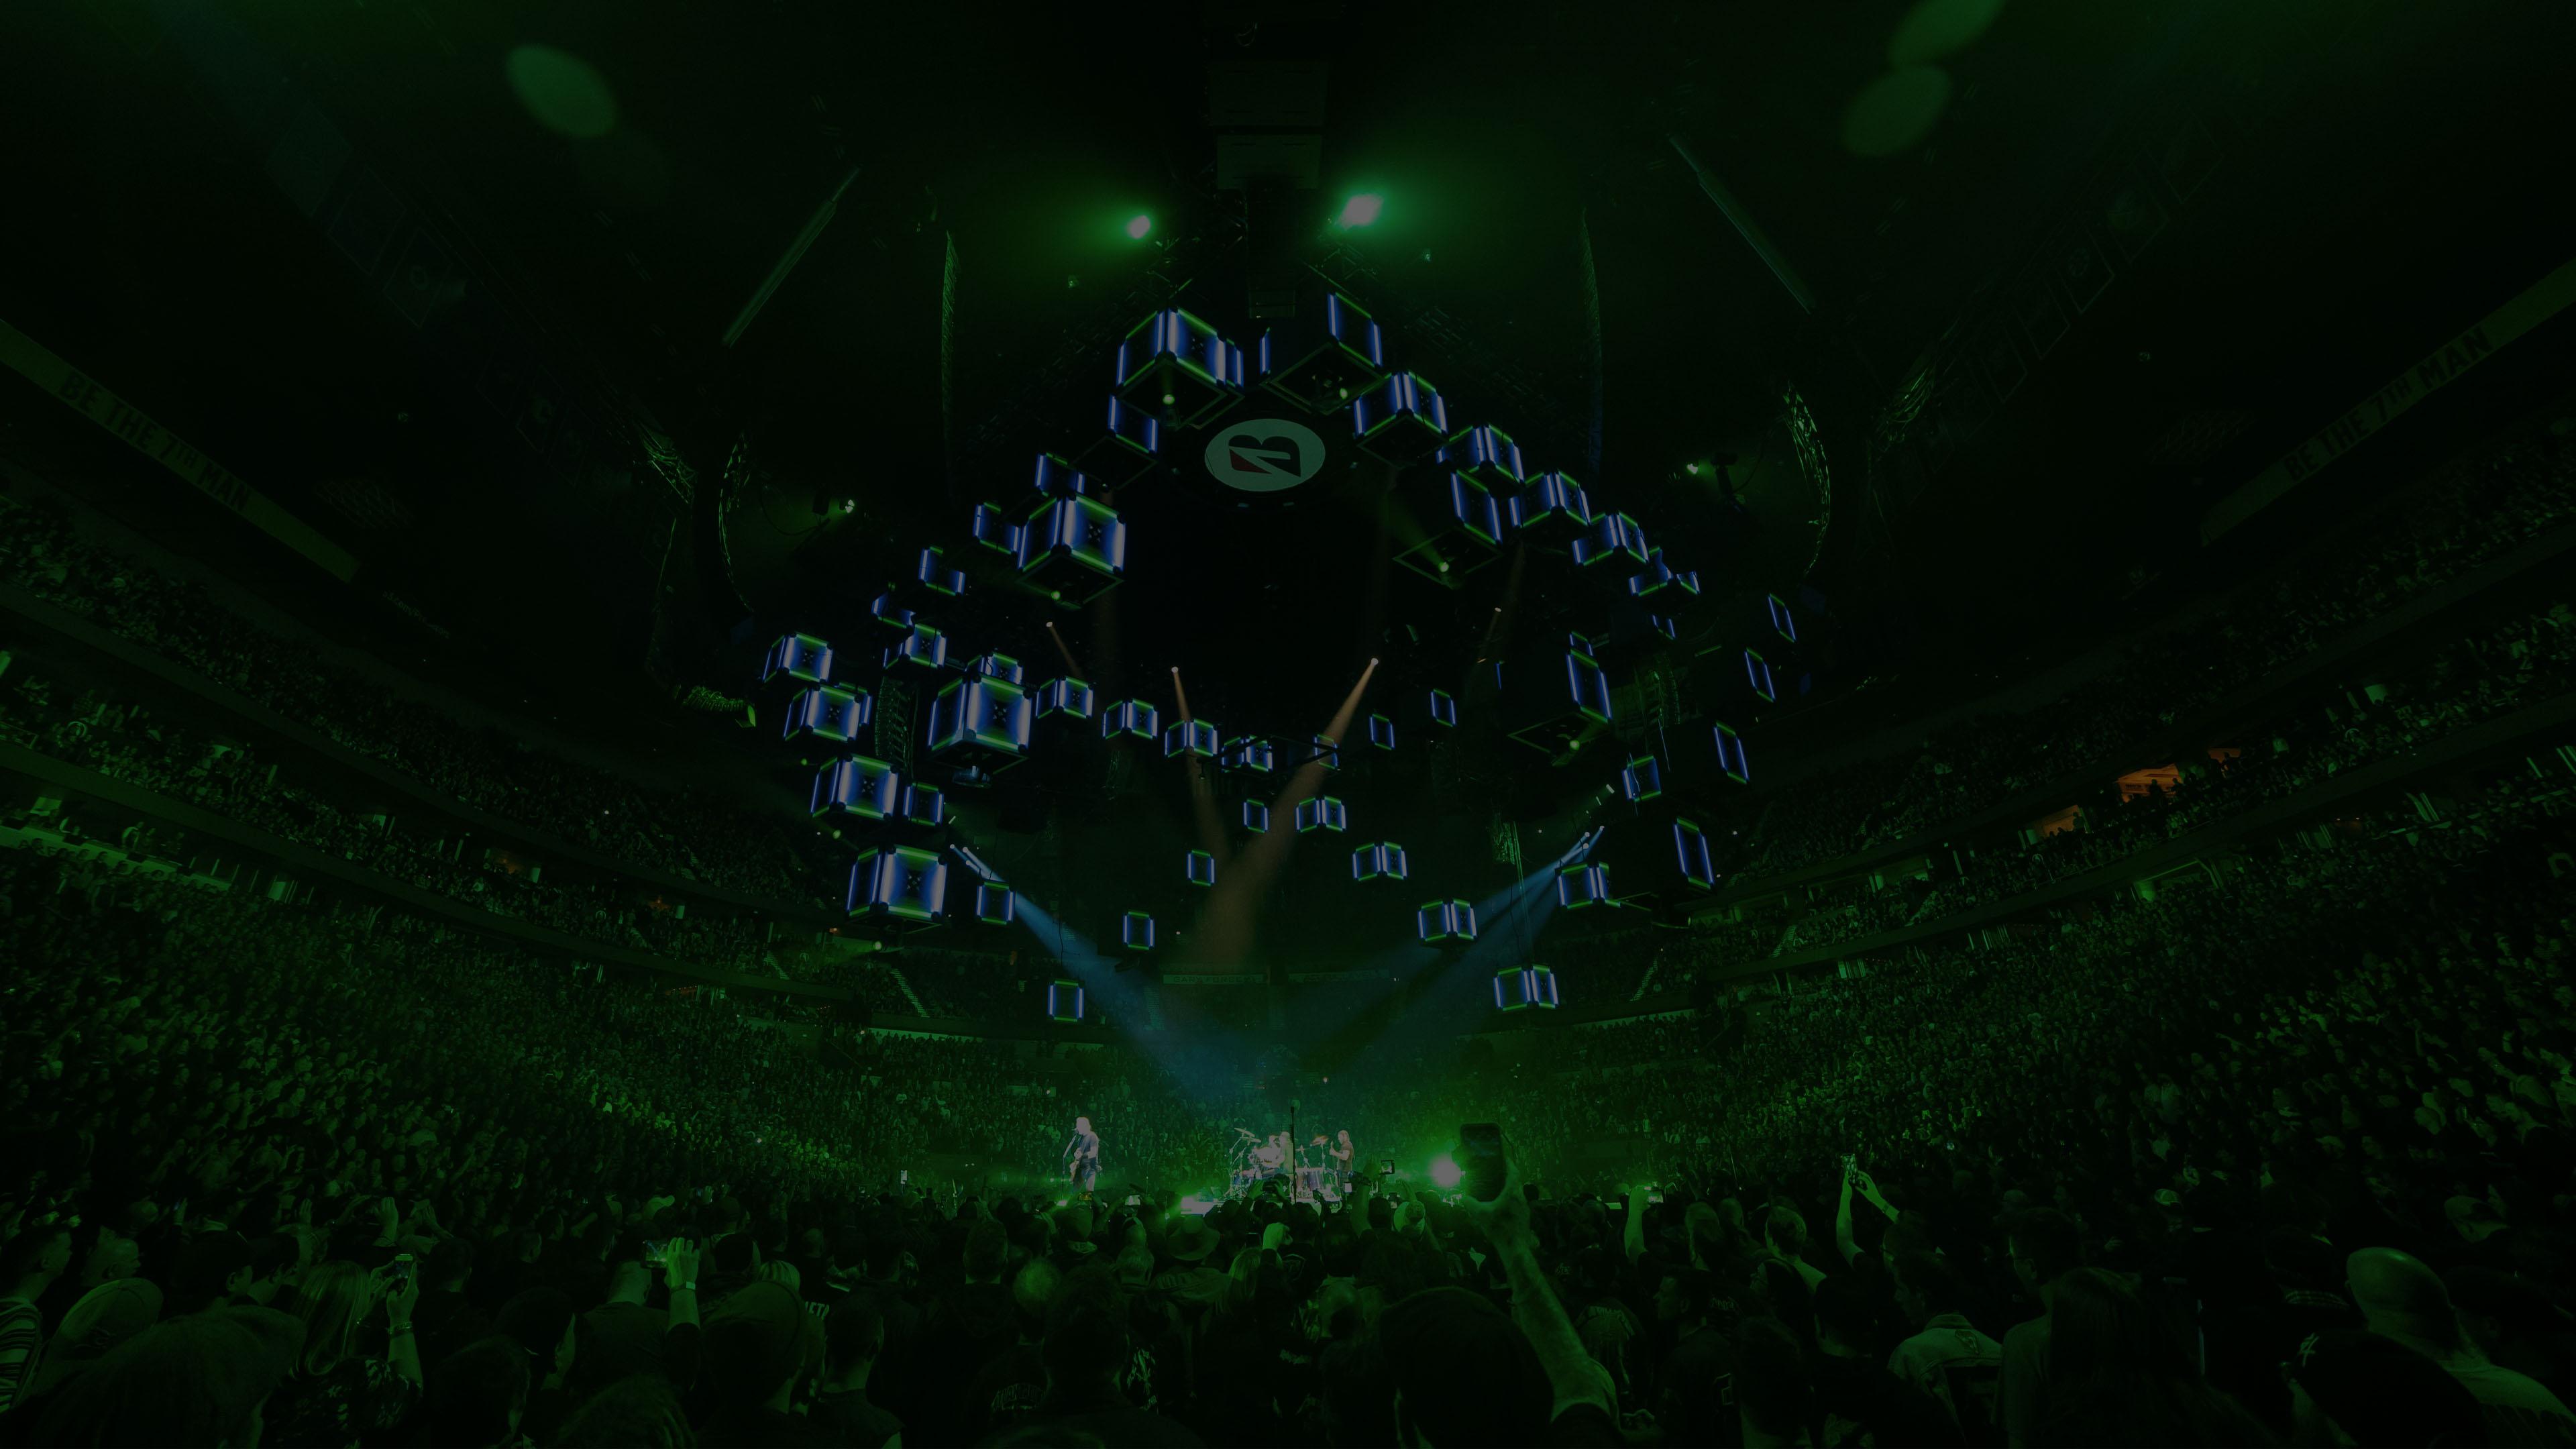 Metallica at Bridgestone Arena in Nashville, TN on January 24, 2019